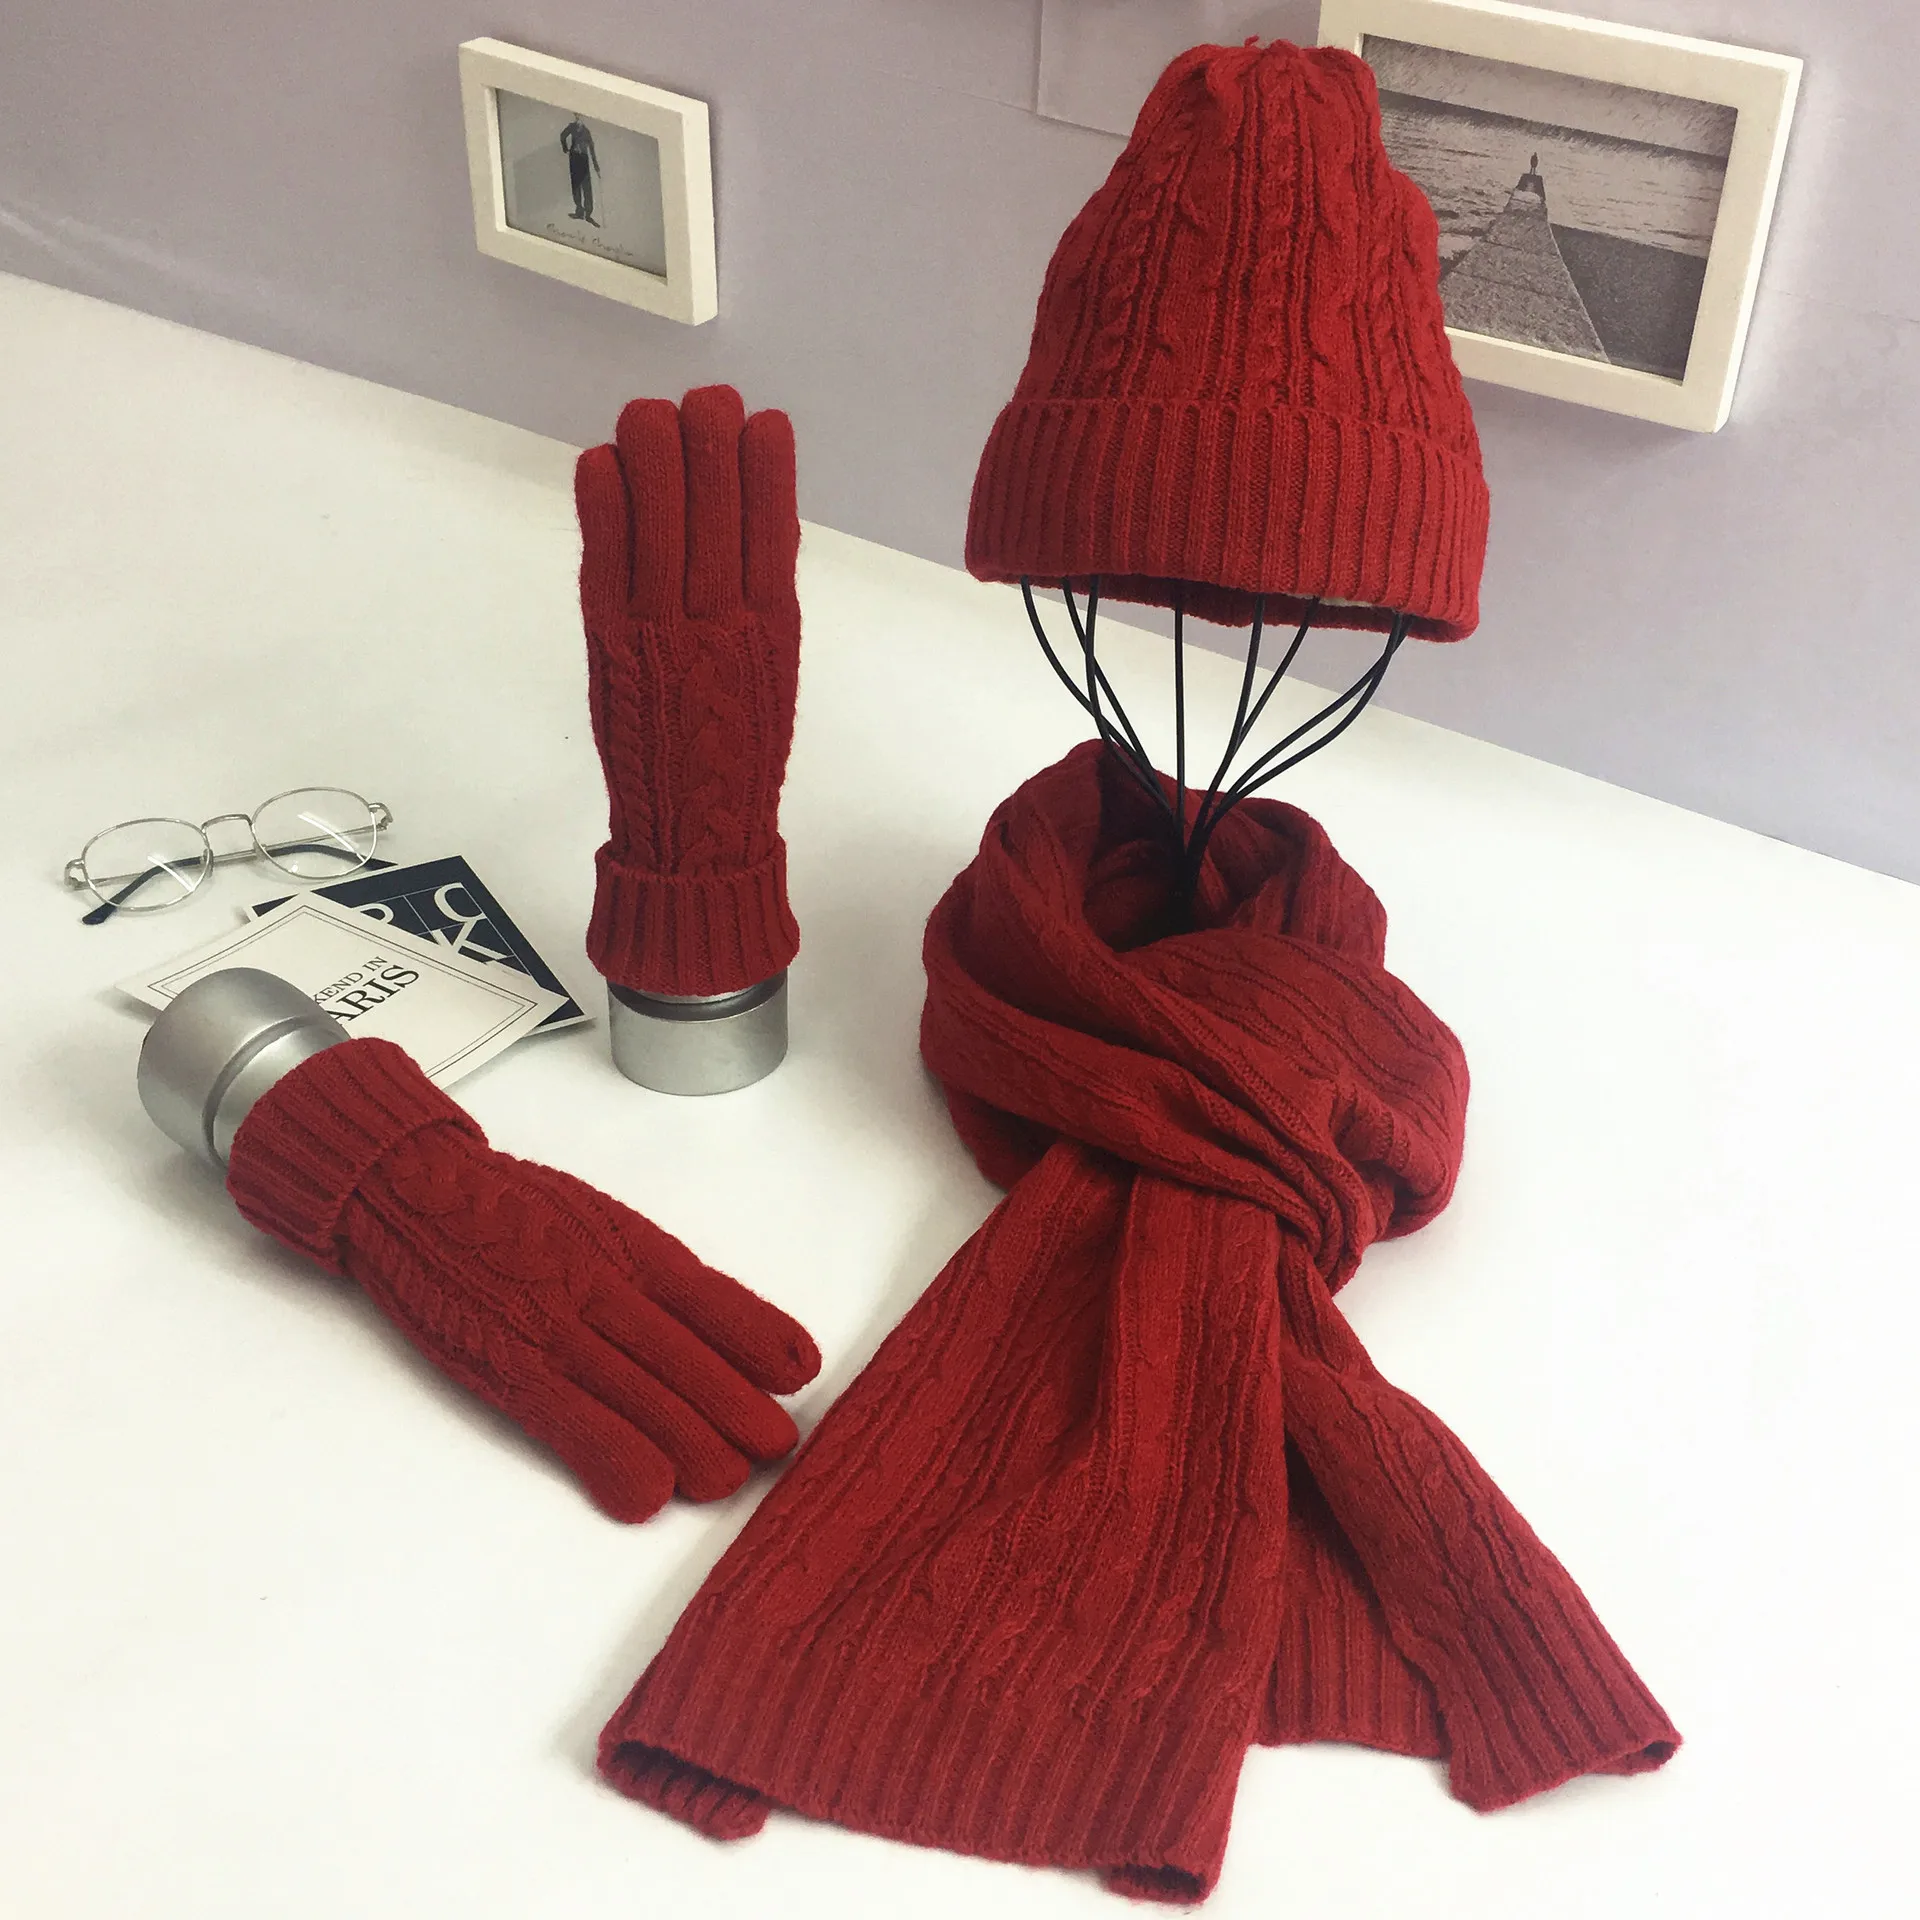 Осень-зима 2021, модная классическая тёплая шапка, перчатки, шарф, набор из трех предметов унисекс из кроличьего меха для мужчин и женщин от AliExpress RU&CIS NEW